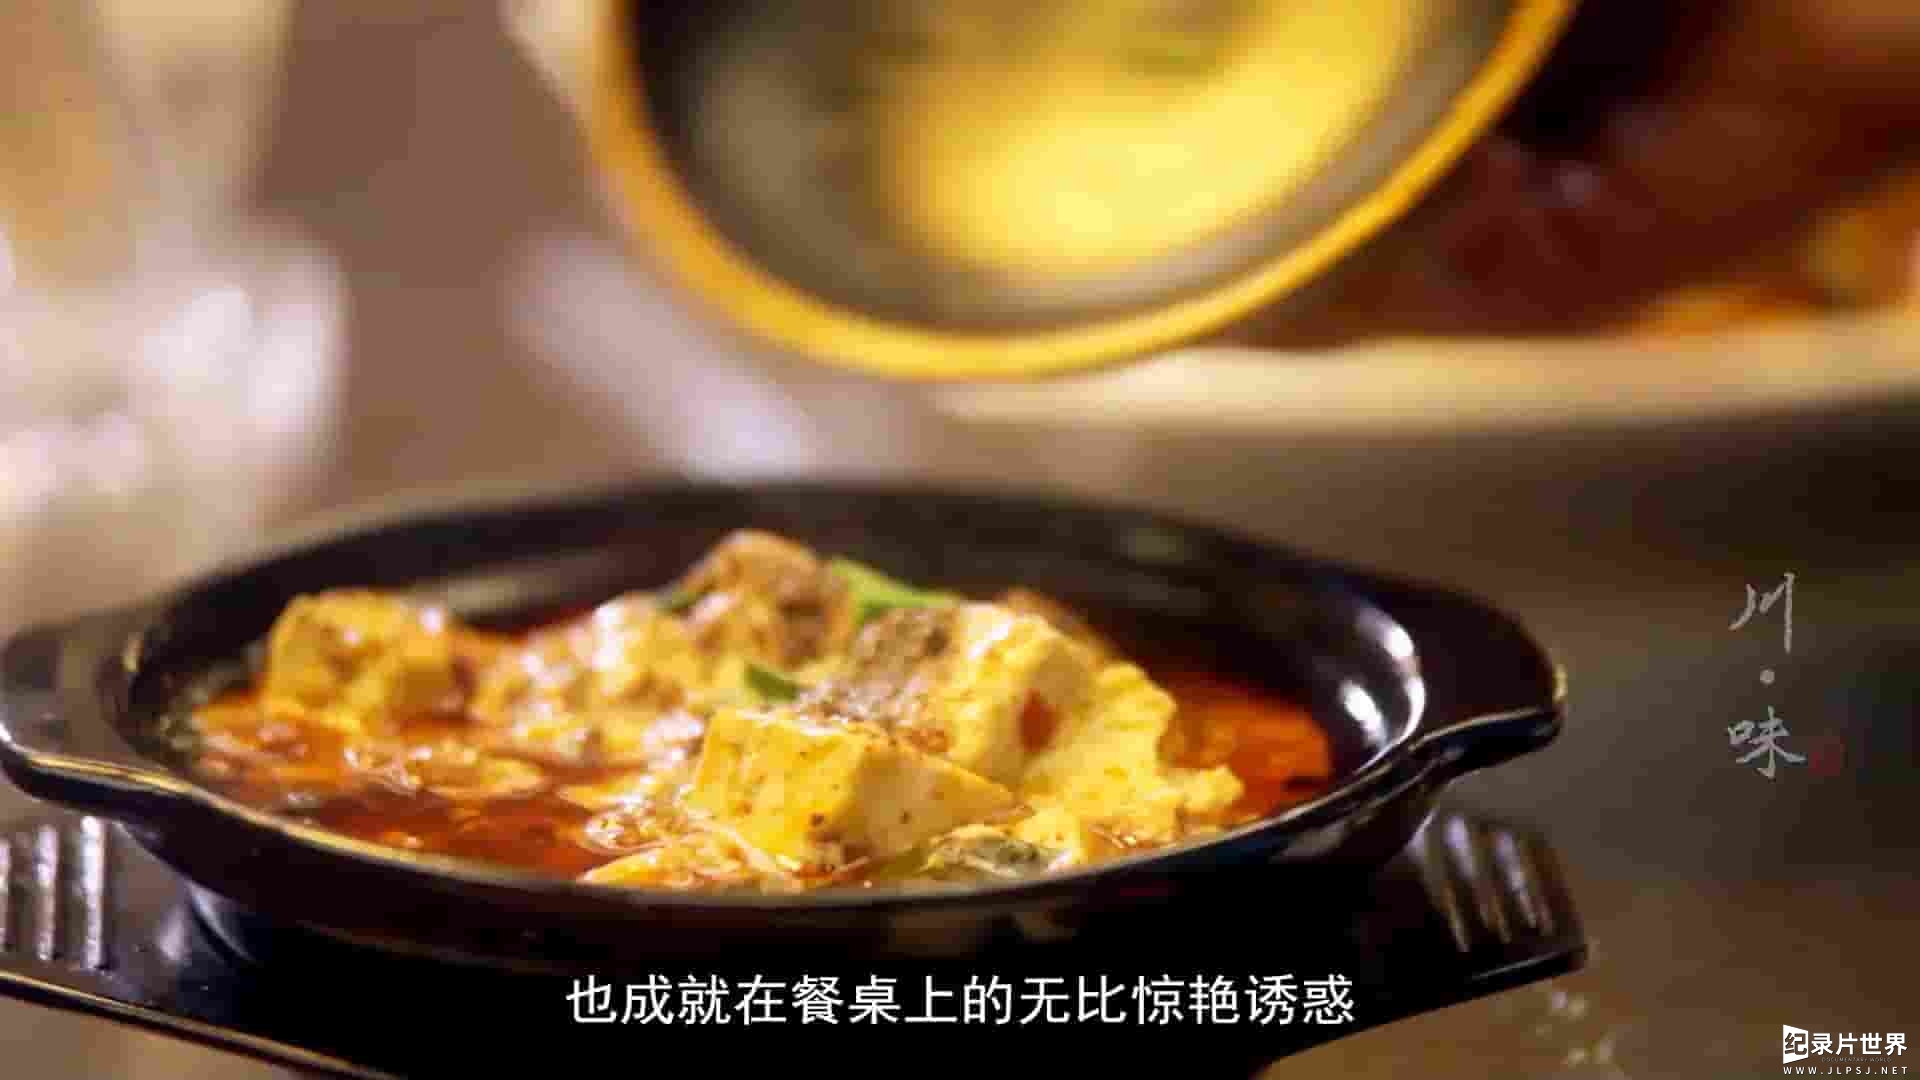 国产纪录片《川味传奇 The second season of Sichuan flavor》全3季共33集